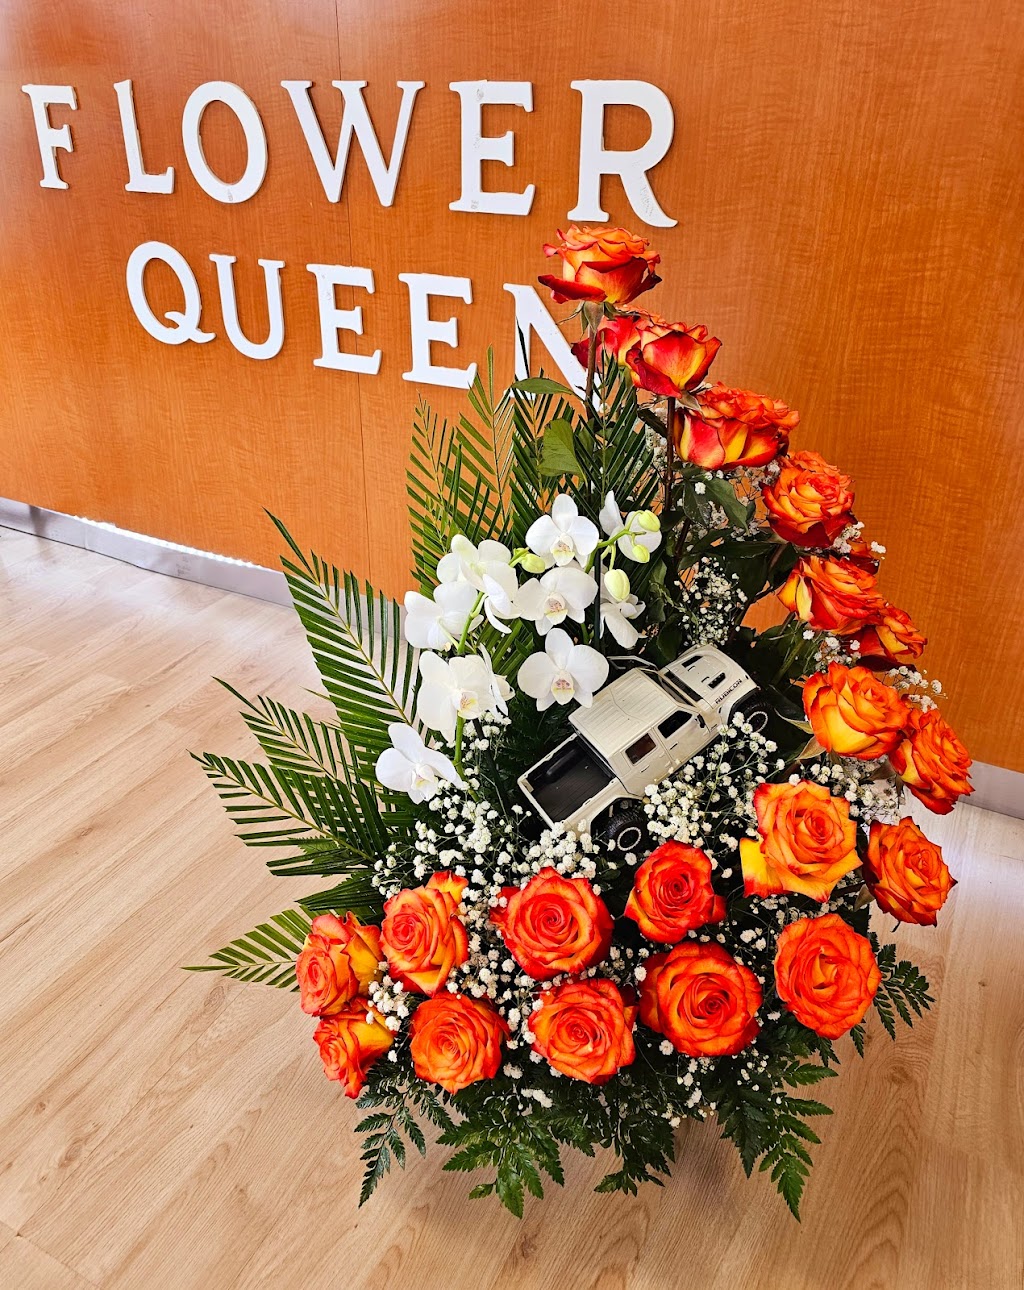 Flower Queen | 4725 -A1, W Gate City Blvd, Greensboro, NC 27407, USA | Phone: (336) 291-8330